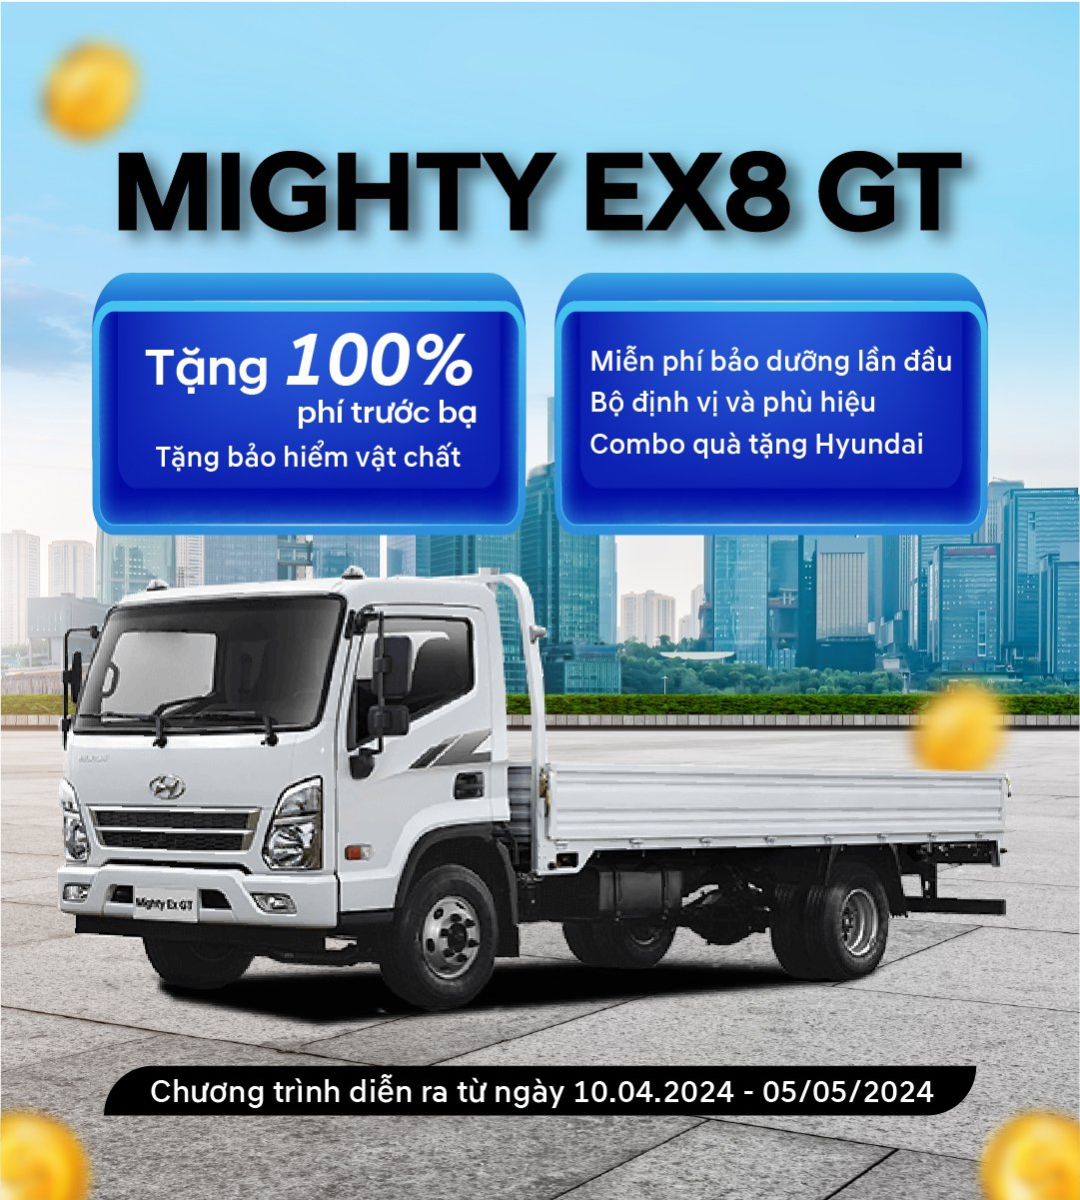 Chương trình khuyến mãi khi mua Mighty EX8 GT